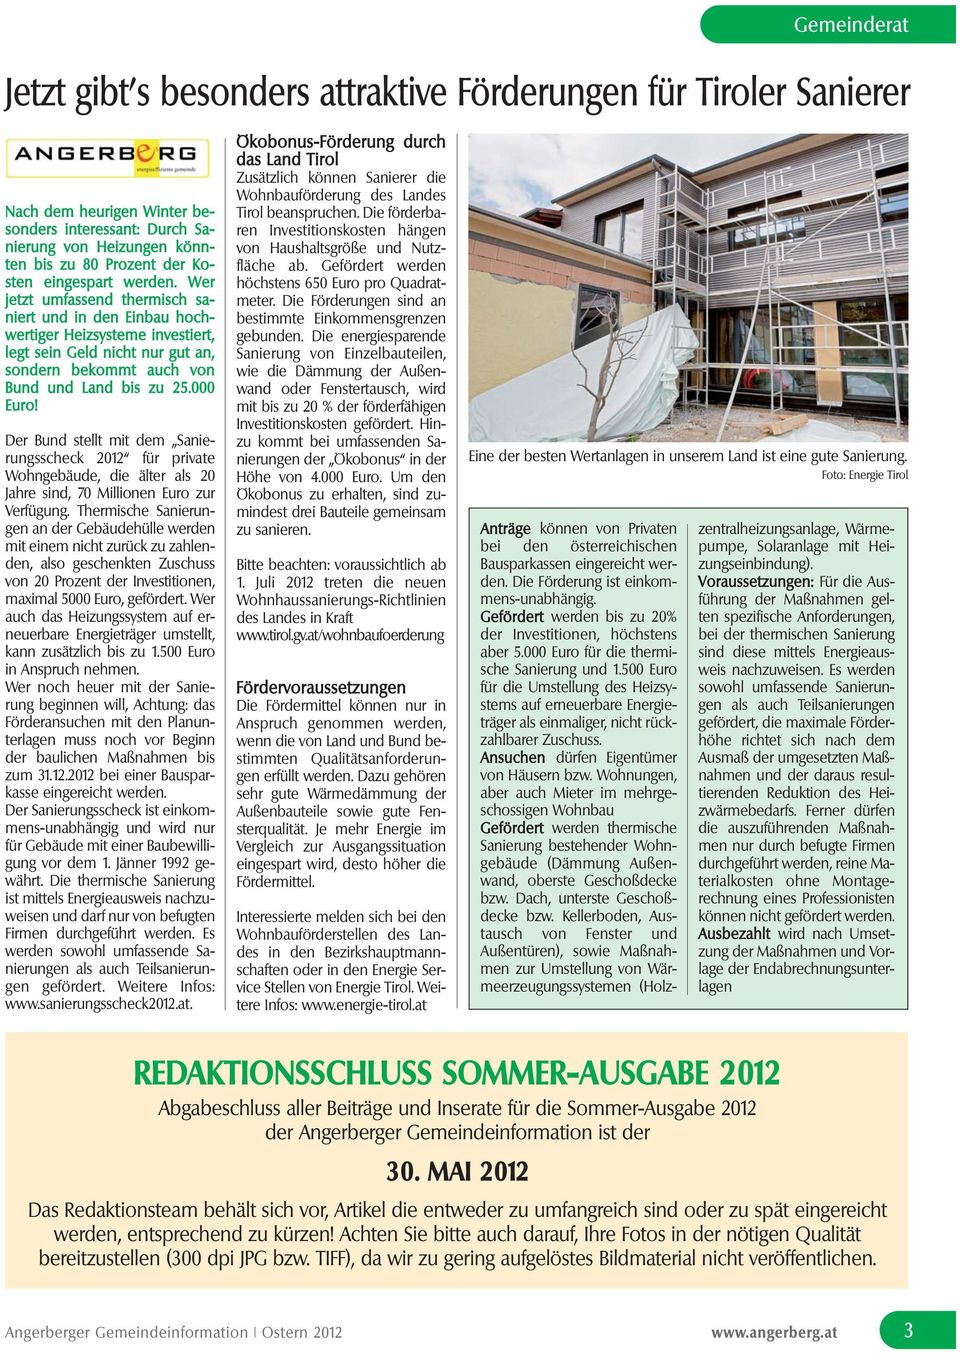 000 Euro! Der Bund stellt mit dem Sanierungsscheck 2012 für private Wohngebäude, die älter als 20 Jahre sind, 70 Millionen Euro zur Verfügung.